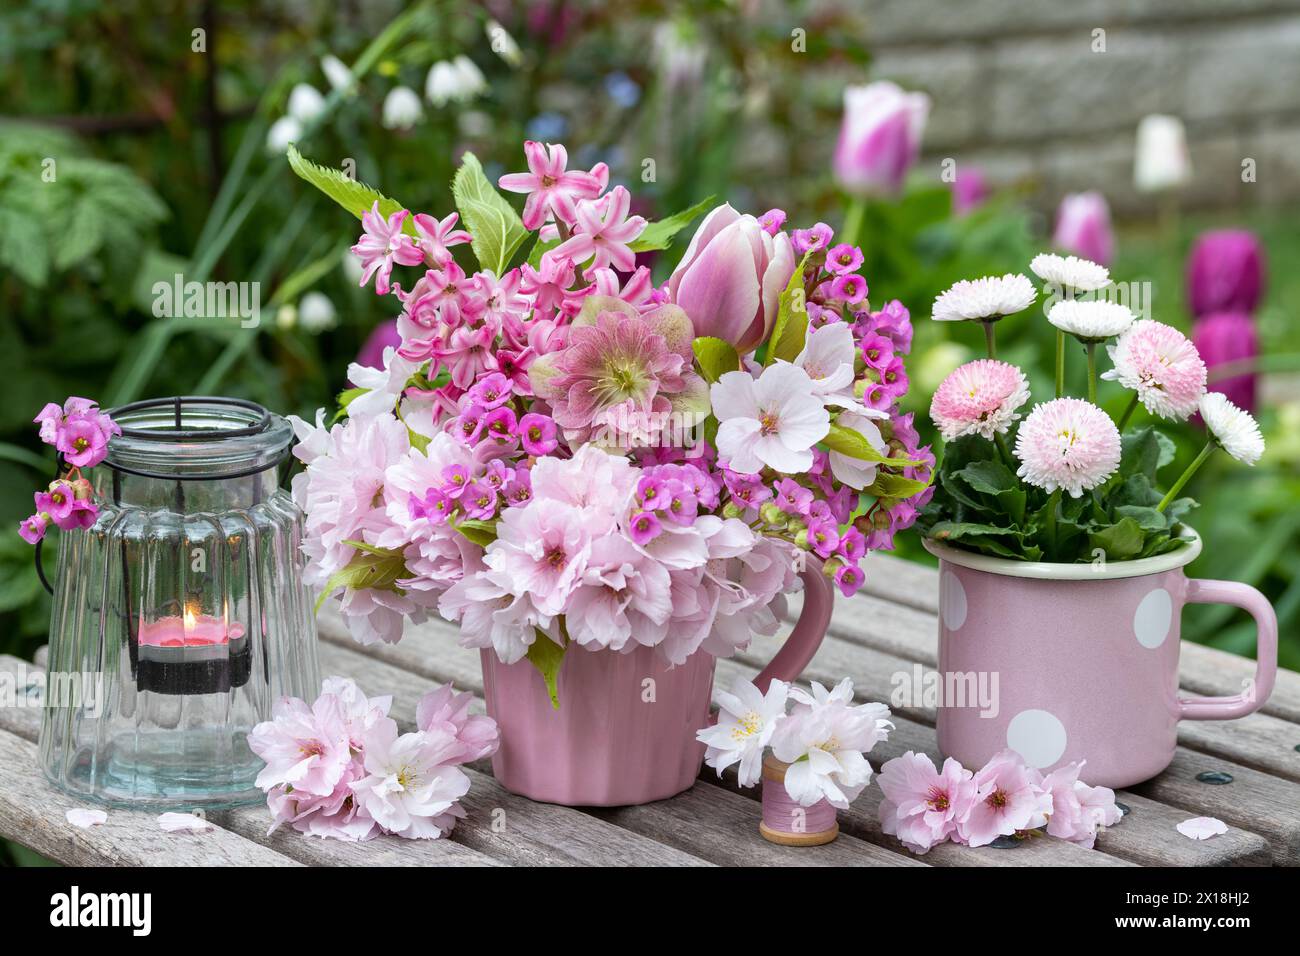 Romantisches Arrangement mit Blumenstrauß von fastenrose, Tulpe, Hyazinthen, bergenie und japanischer blühender Kirsche, bellis perennis und Tischlaterne Stockfoto